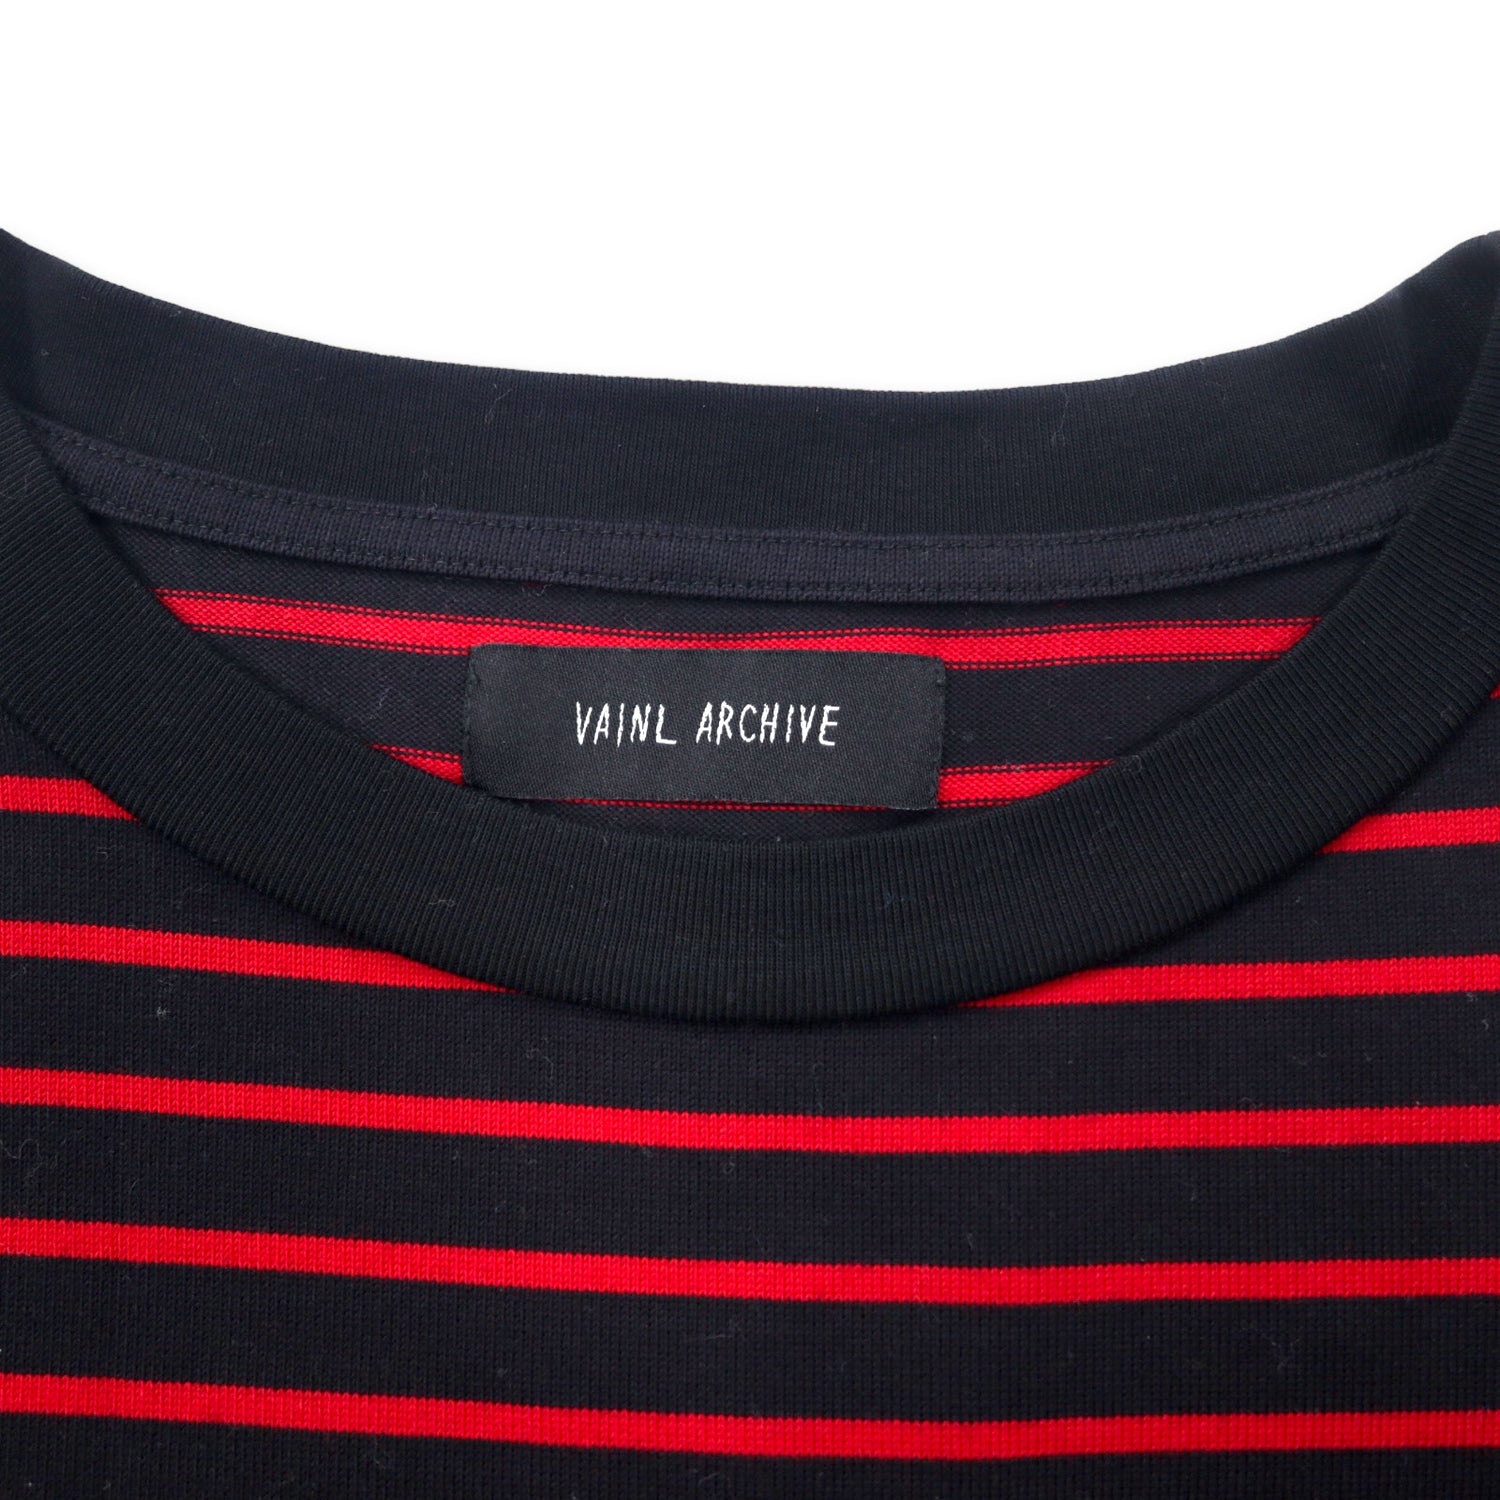 VAINL ARCHIVE Big Silhouette Striped T-Shirt L Black Red Cotton